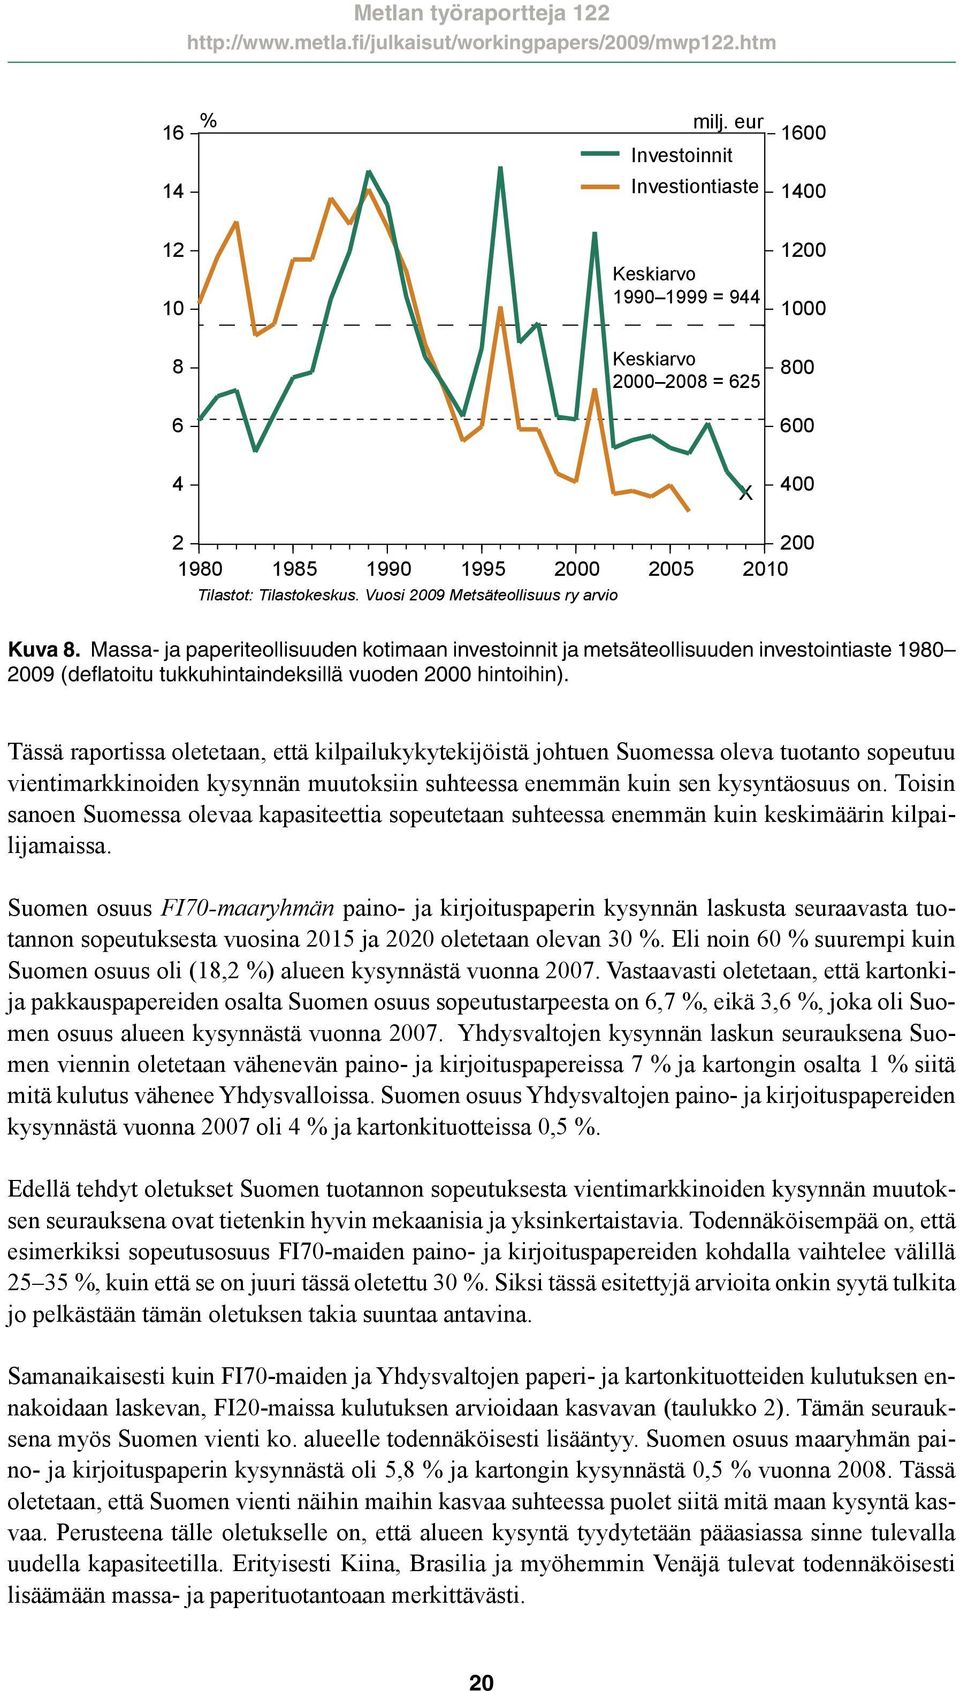 Vuosi 2009 Metsäteollisuus ry arvio Kuva 8. Massa- ja paperiteollisuuden kotimaan investoinnit ja metsäteollisuuden investointiaste 1980 2009 (deflatoitu tukkuhintaindeksillä vuoden 2000 hintoihin).